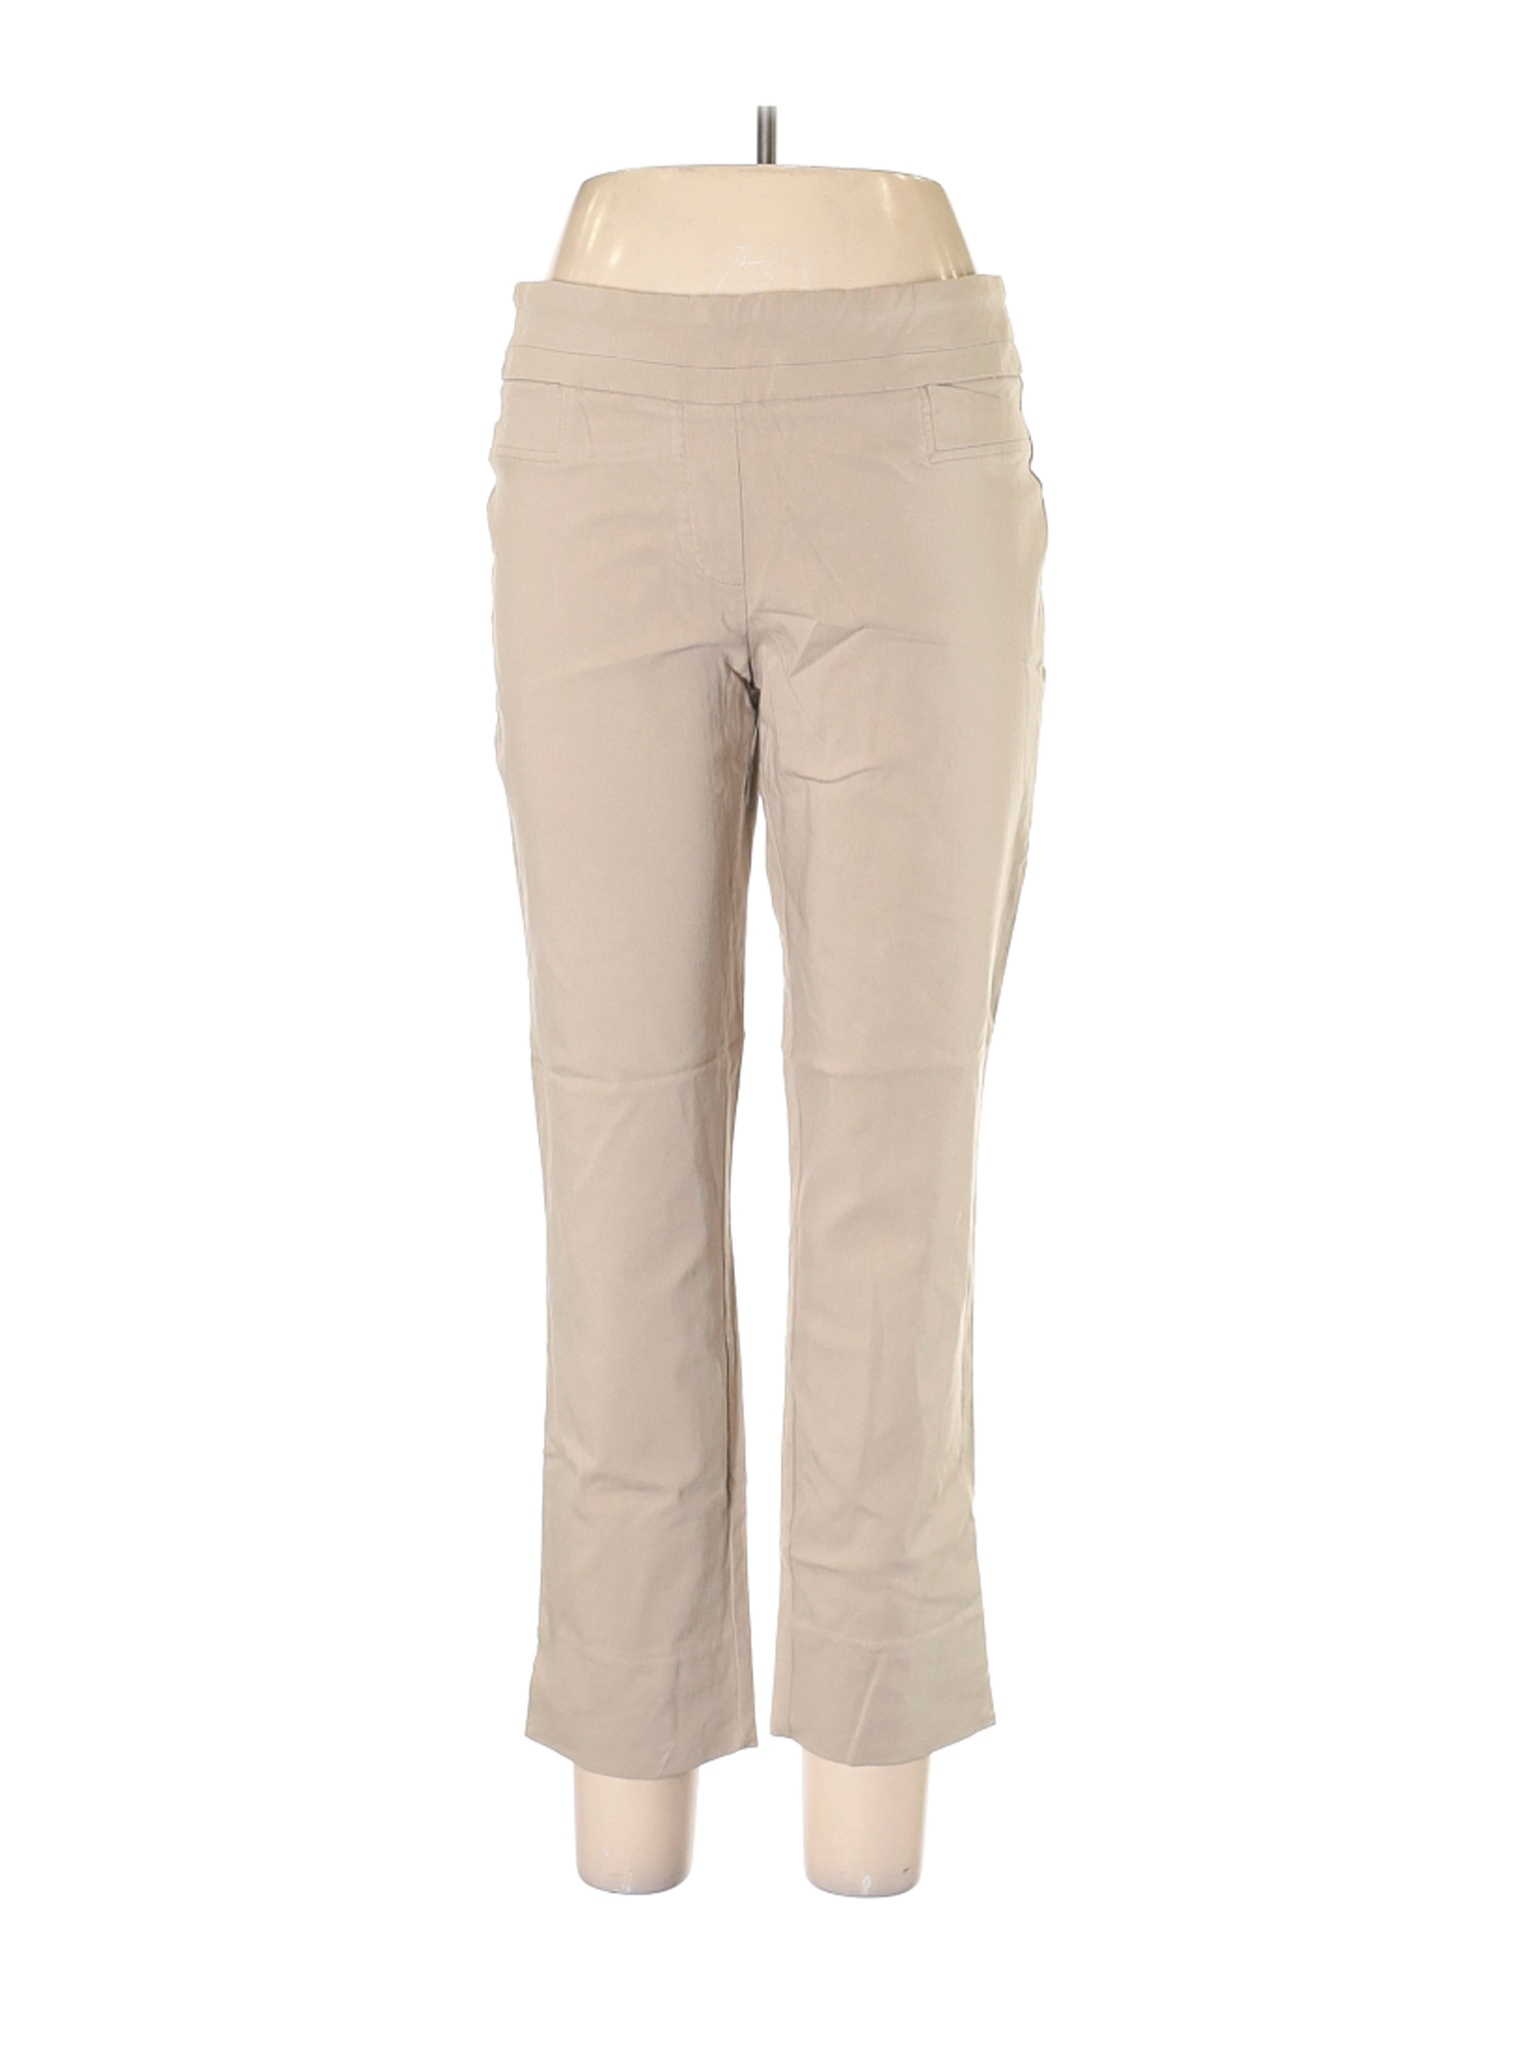 Renuar Women Brown Dress Pants 10 | eBay